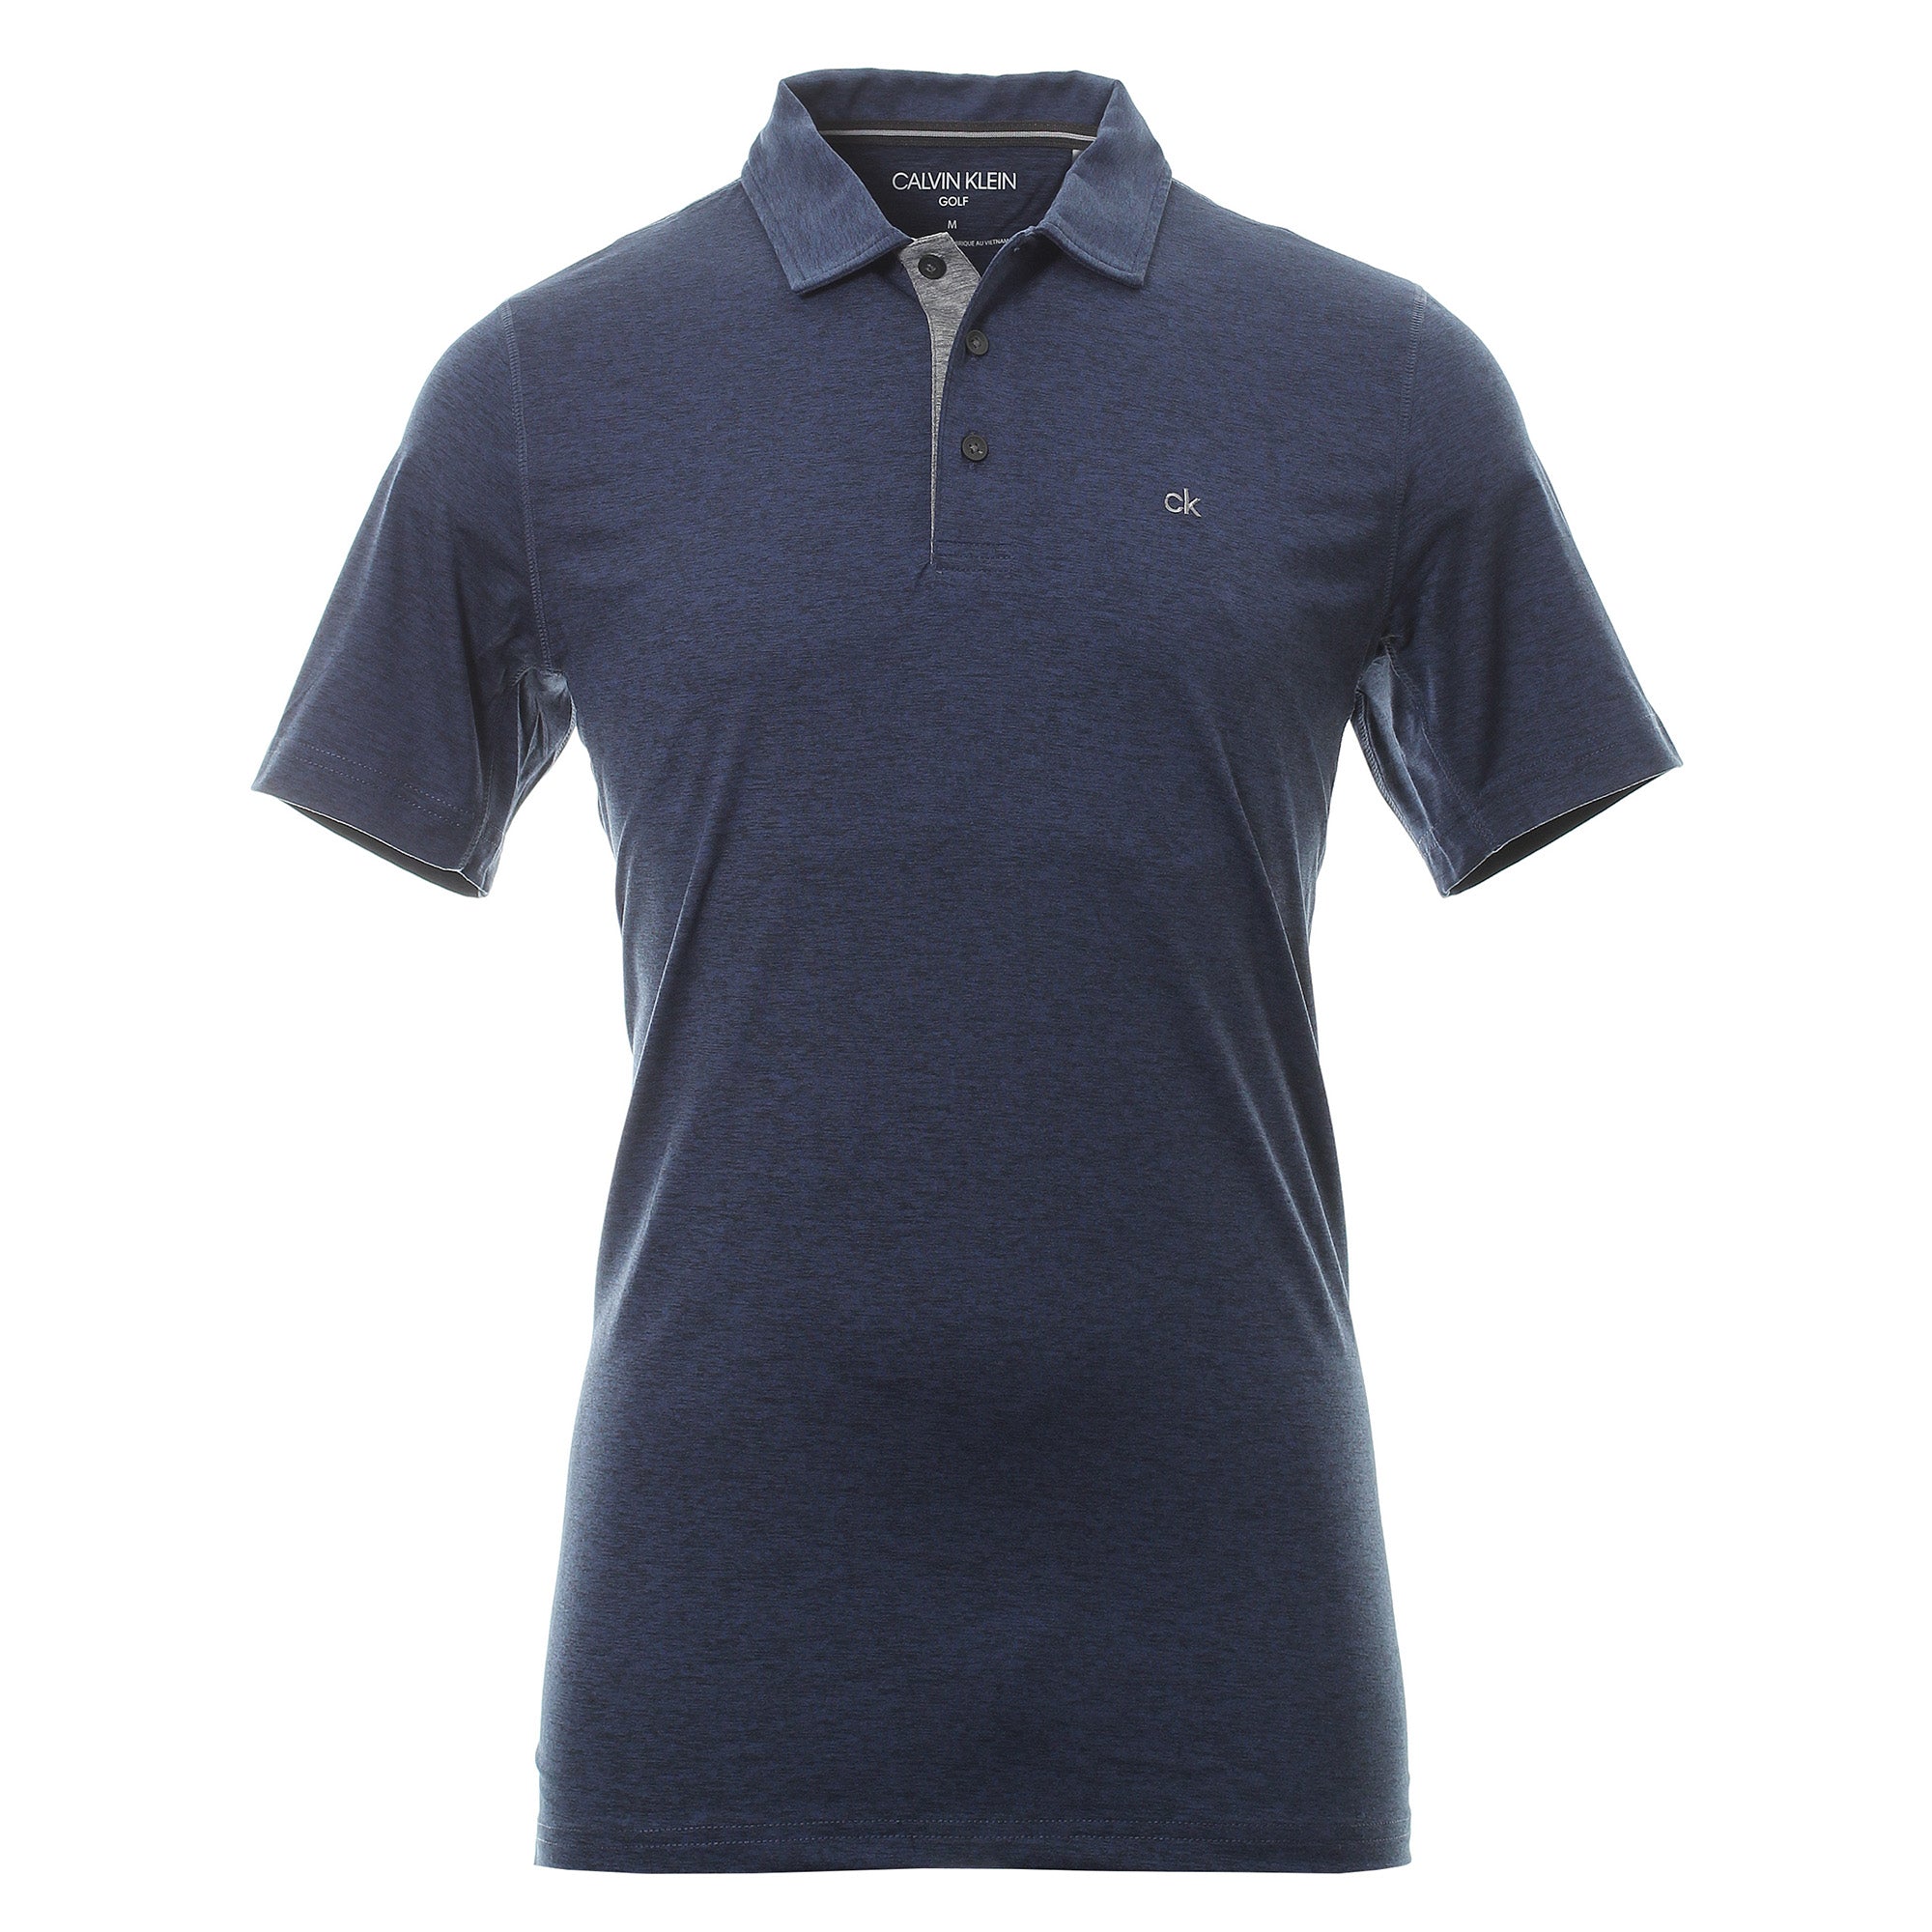 calvin-klein-golf-newport-shirt-c9406-navy